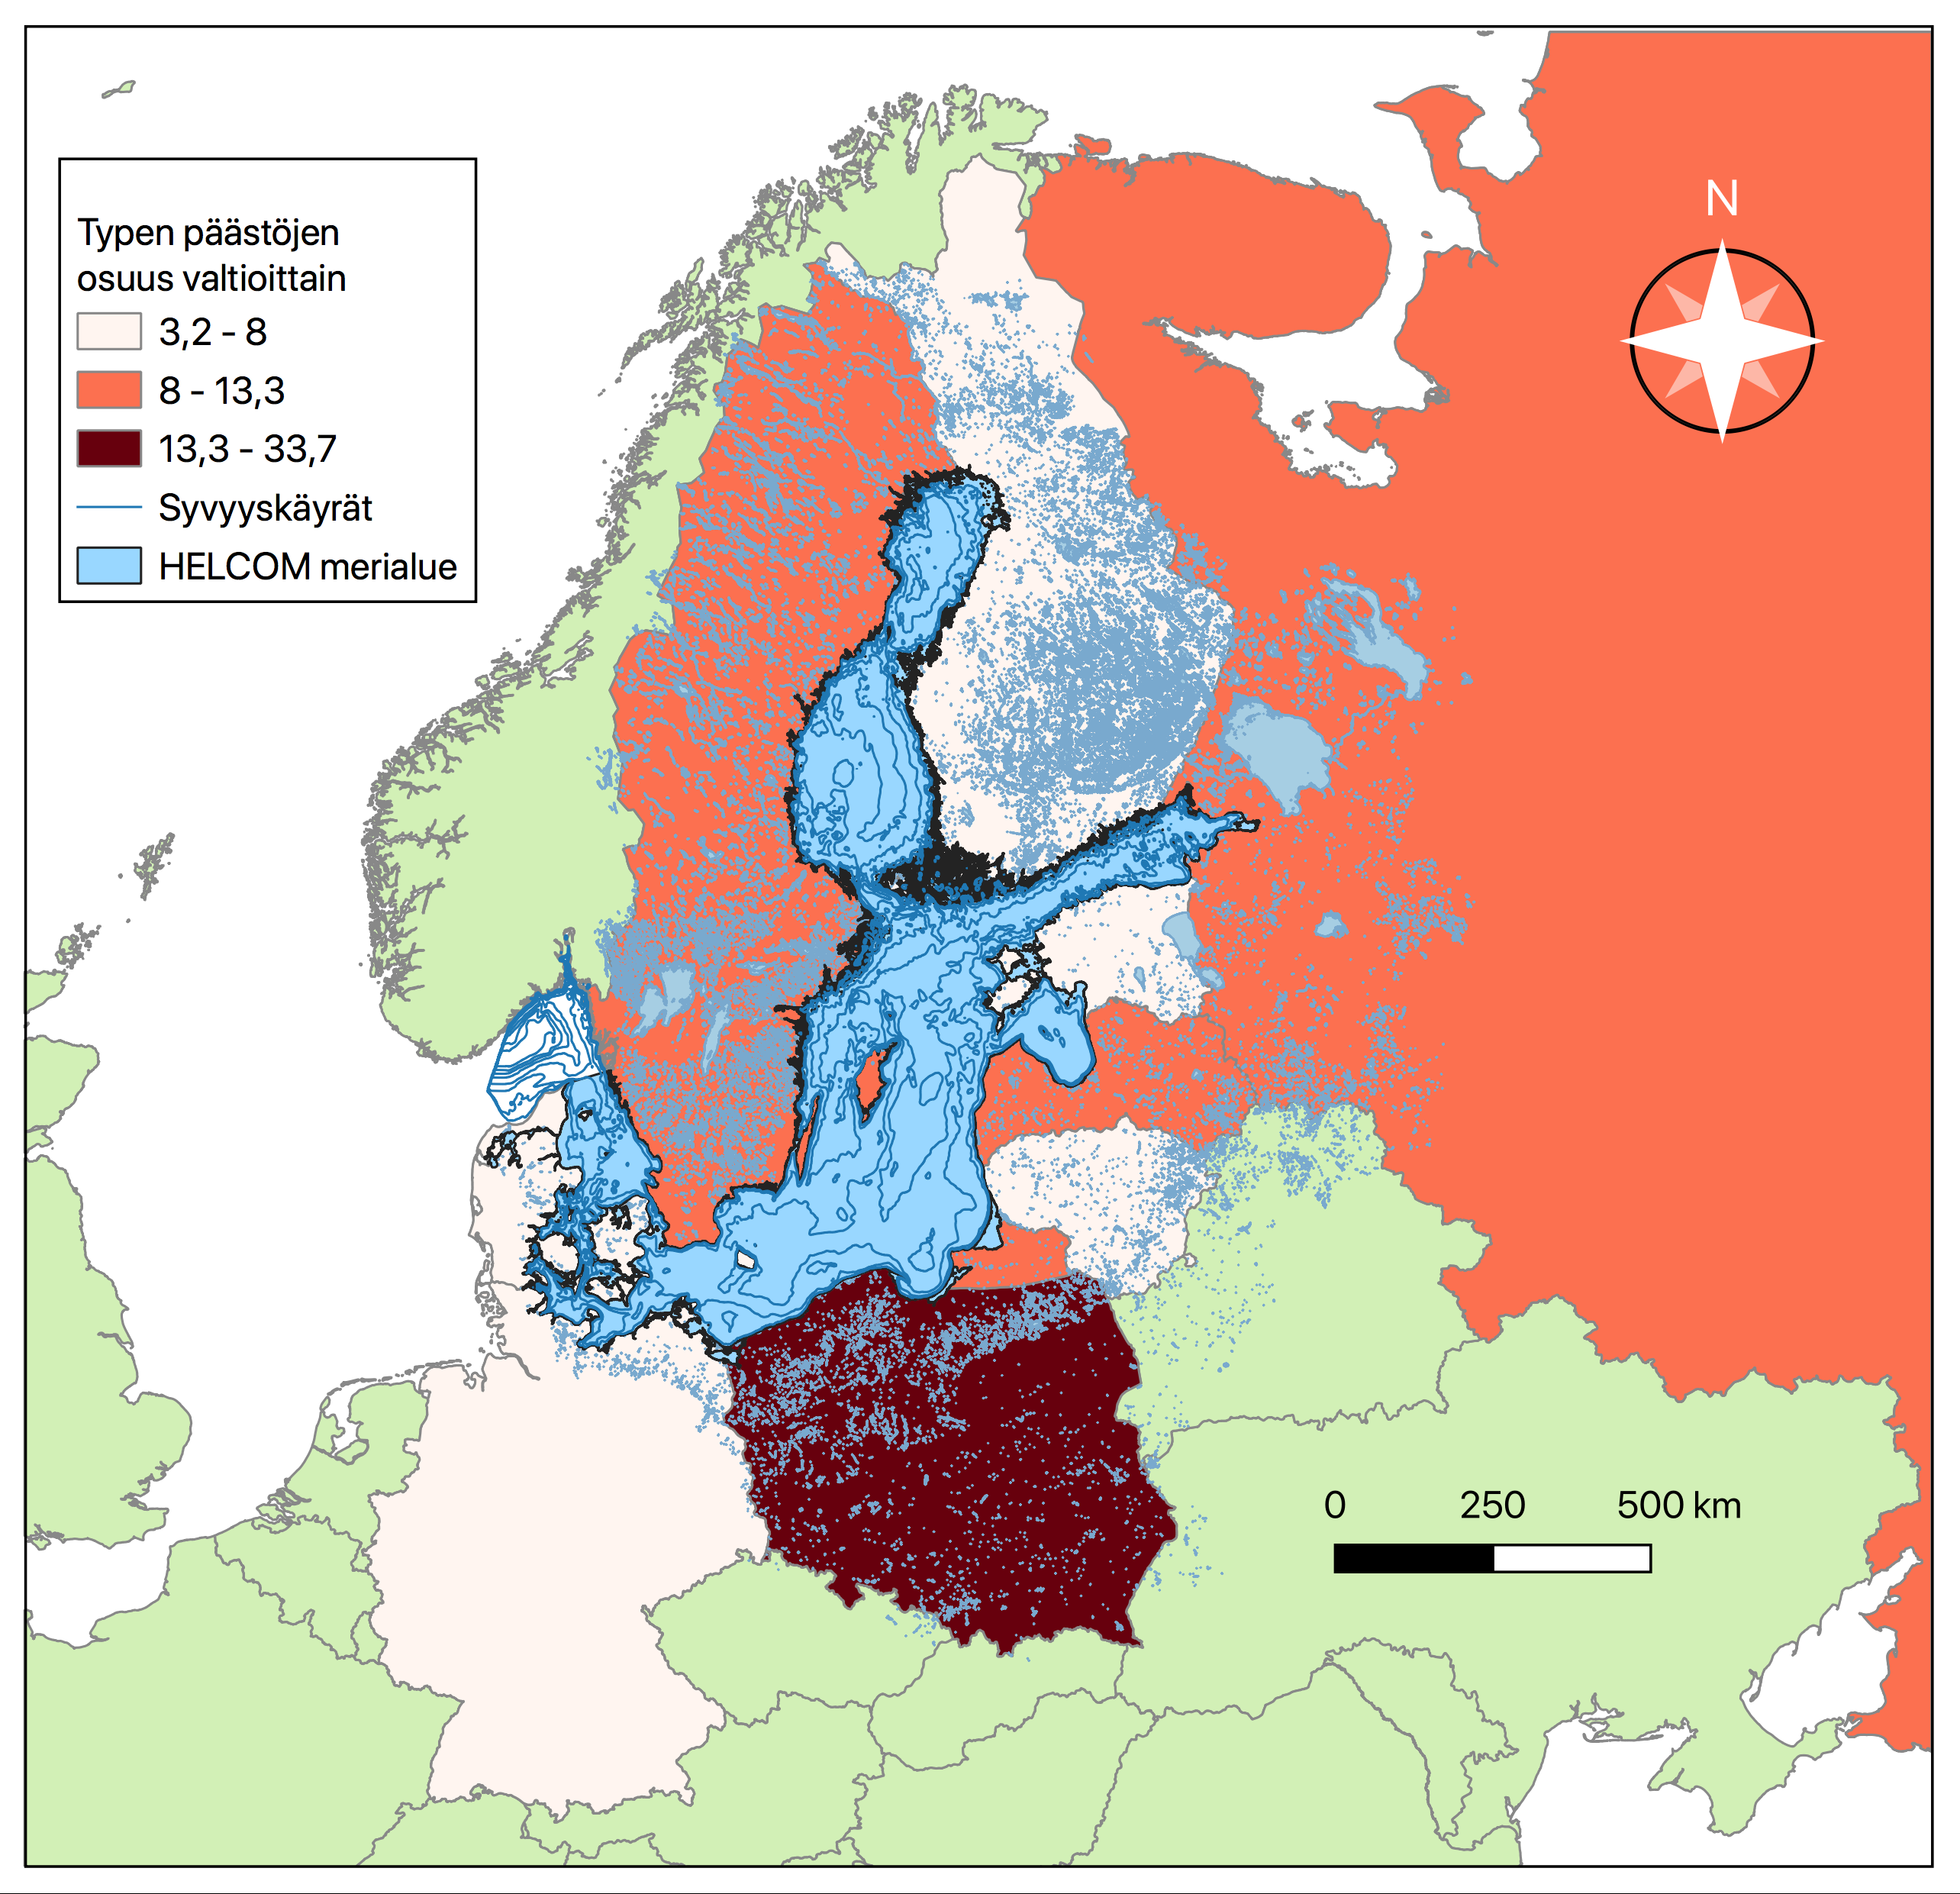 Pohjois-Euroopan kartta joka on keskittynyt Itämeren ympärysvaltioihin. Typen päästöjen osuudet valtioittain on luokiteltu asteikoilla vaaleanpunainen 3,2-8, punainen 8-13,3 ja tummanpunainen 13,3-33,7. Vaaleanpunaisina eli typpipäästöiltään pieniosaisimpina valtioina on väritetty Saksa, Tanska, Liettua, Viro ja Suomi. Punaisella eli keskisuurilla päästöillä on väritetty Ruotsi, Latvia ja Venäjä. Ainoana suuripäästöisenä maana tummanpunaisena on värjätty Puola. Loput kartassa näkyvät Euroopan maat ovat taustakarttana ja väriltään vaalean vihreitä, sillä ne eivät ole osana typpipäästötilastoja.